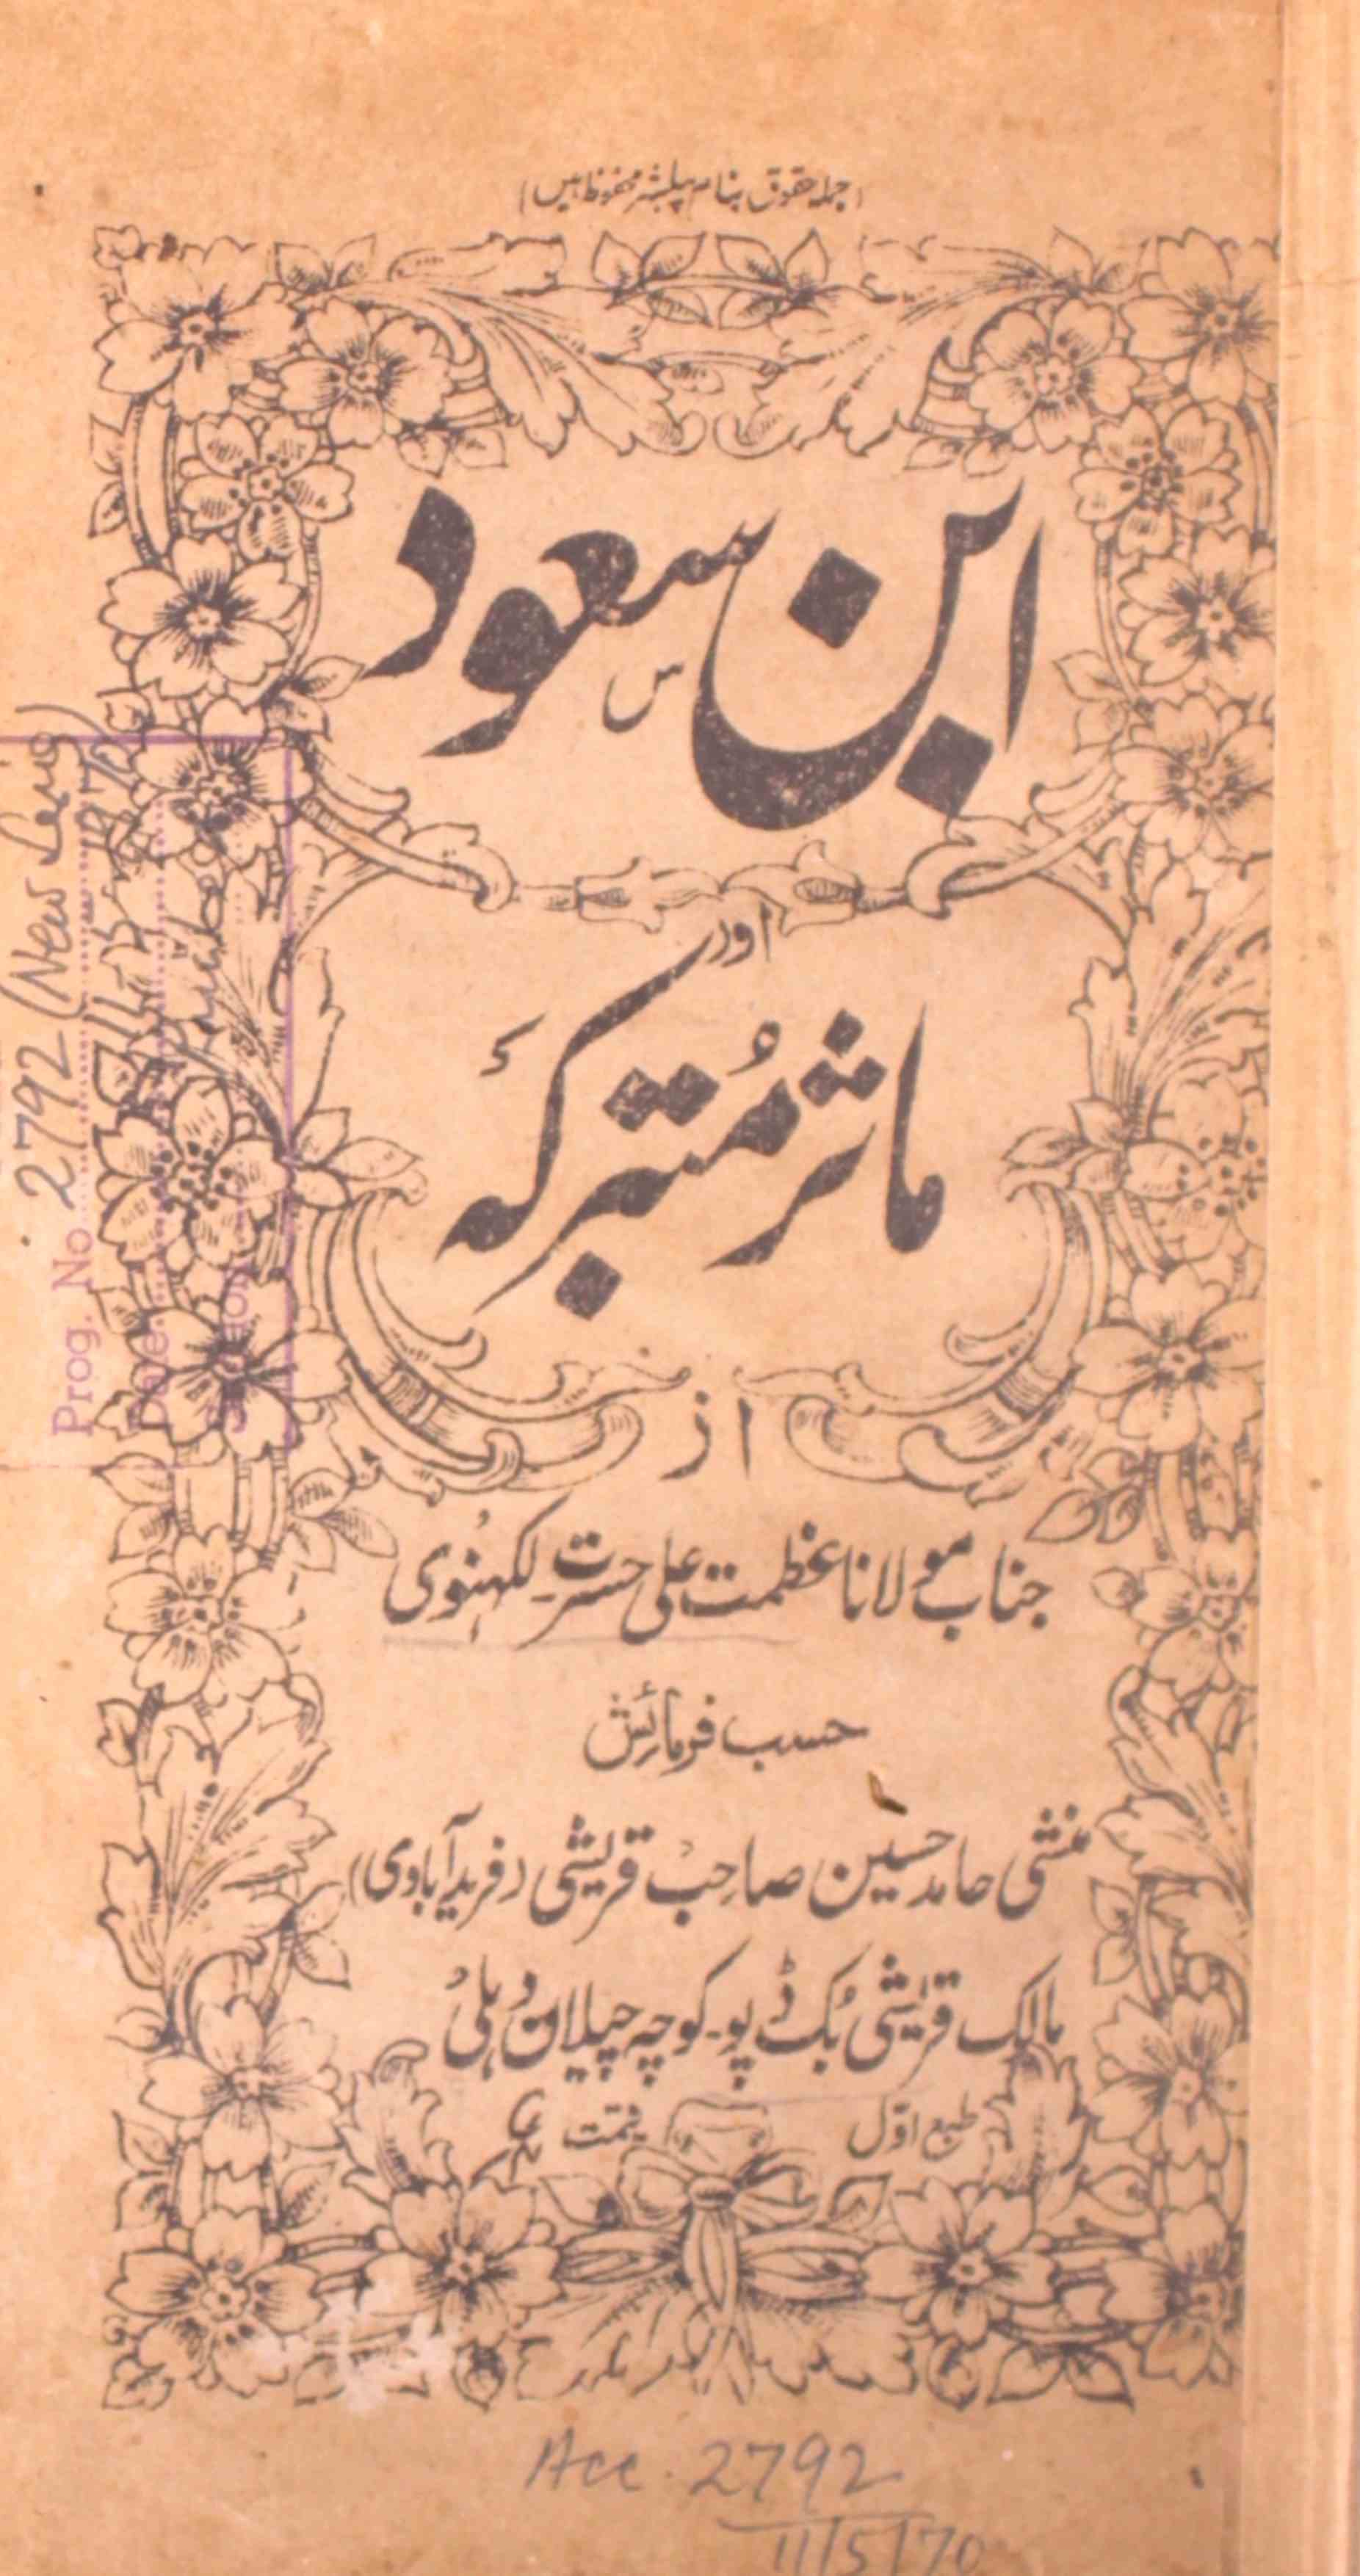 Ibn-e-Suood